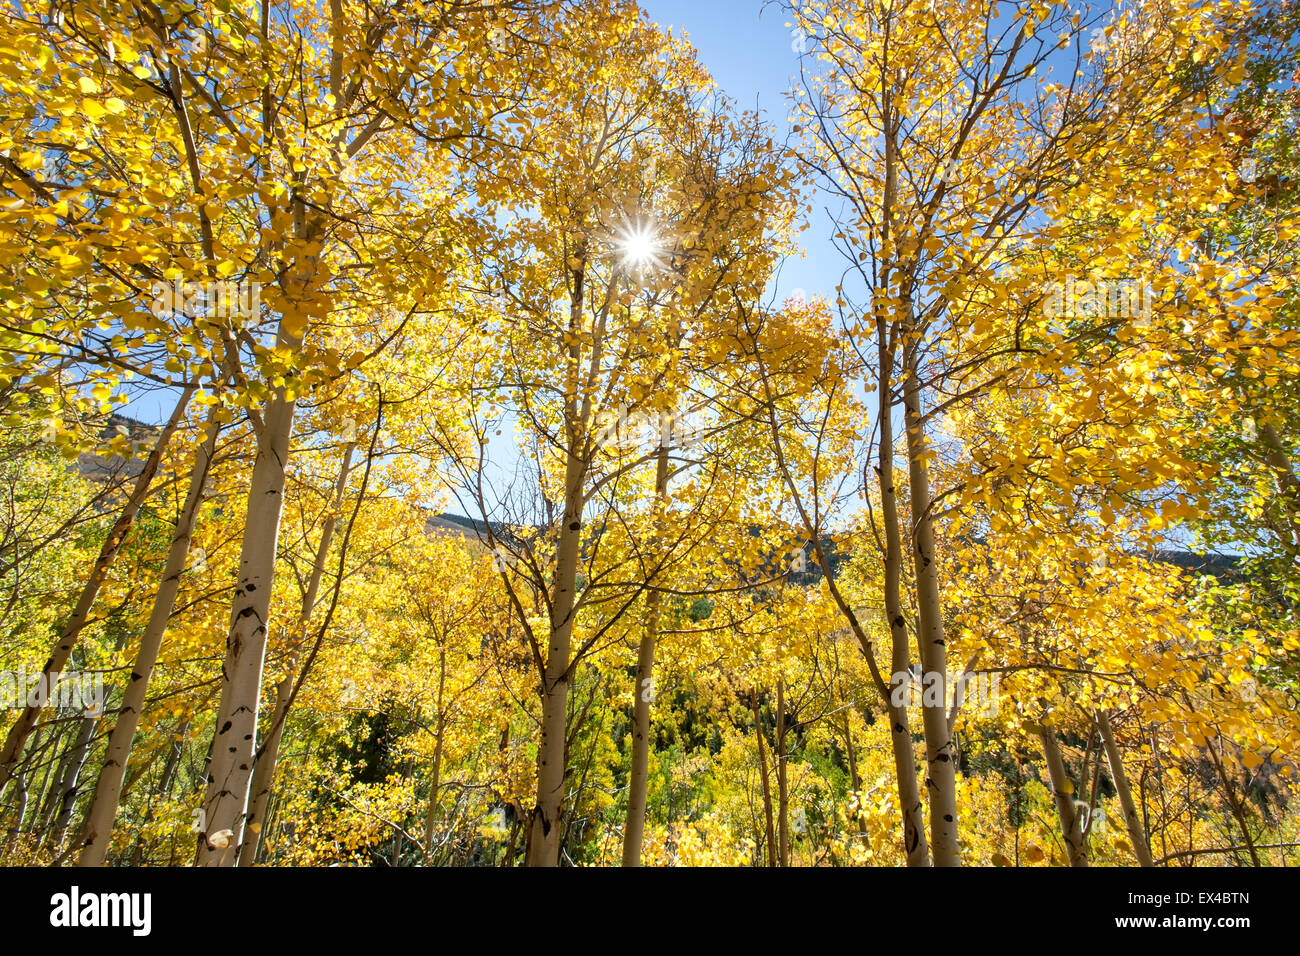 Par Sunburst trembles en couleurs d'automne, le tremble Vista Trail, Santa Fe National Forest, Nouveau Mexique USA Banque D'Images